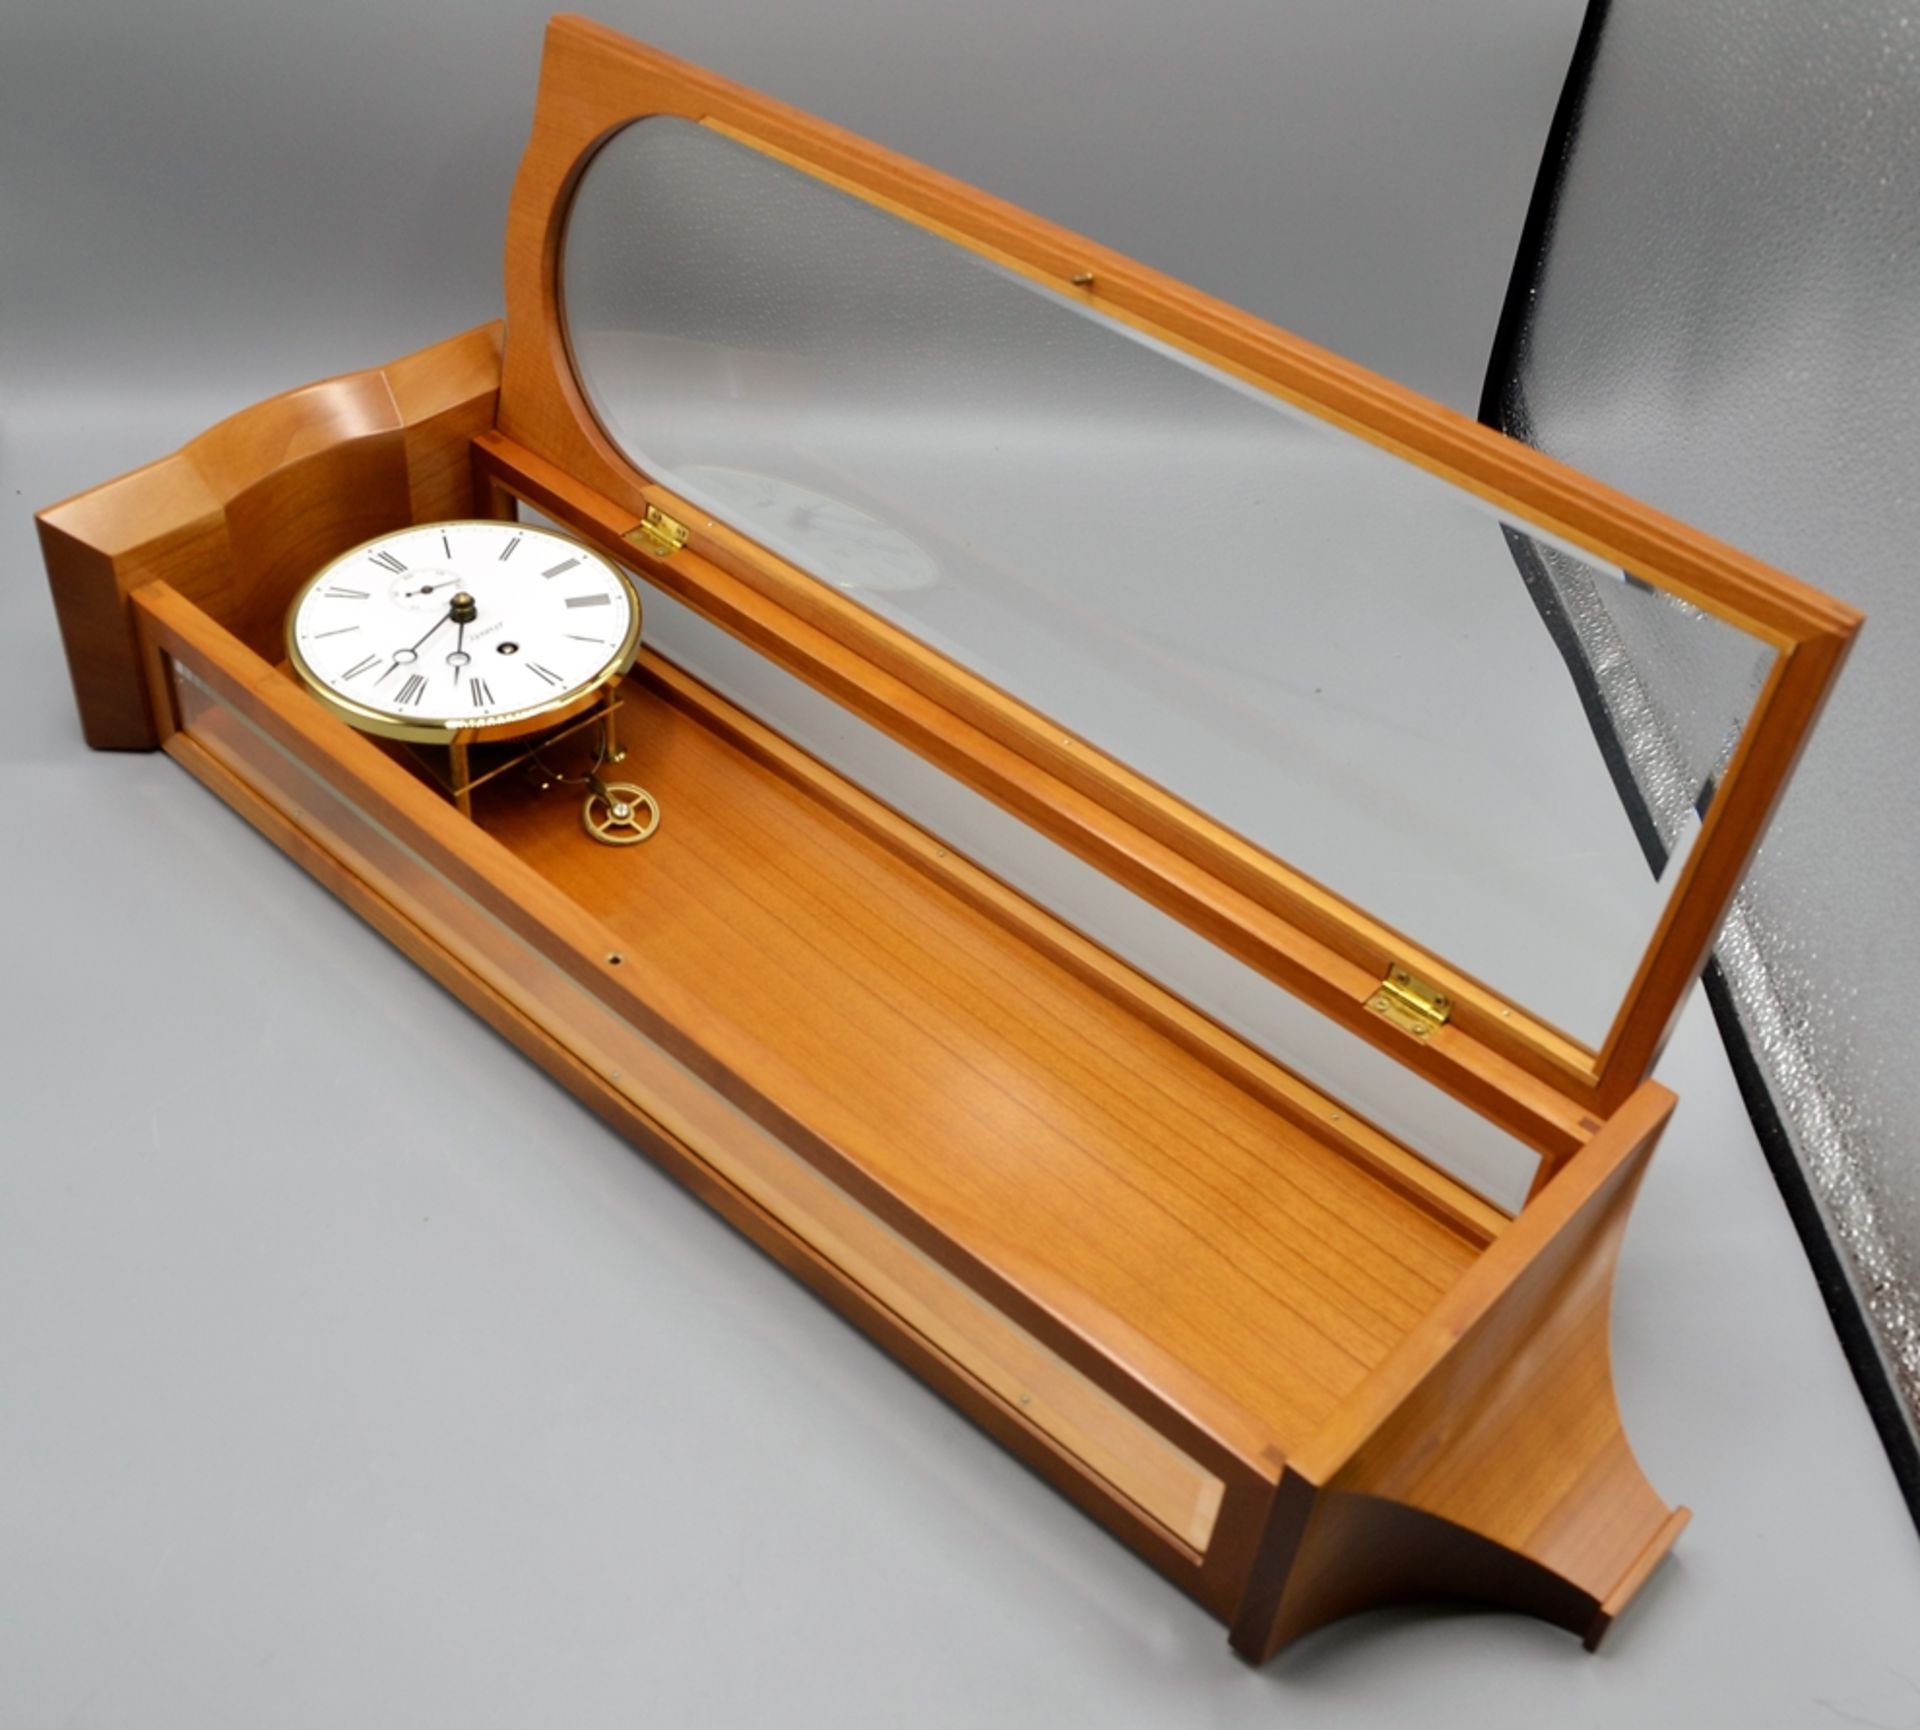 Kieninger Miniatur Seilzugregulator Wanduhr ca. 54 cm, die Uhr läuft an (Ganggenauigkeit u. Laufdau - Image 3 of 5